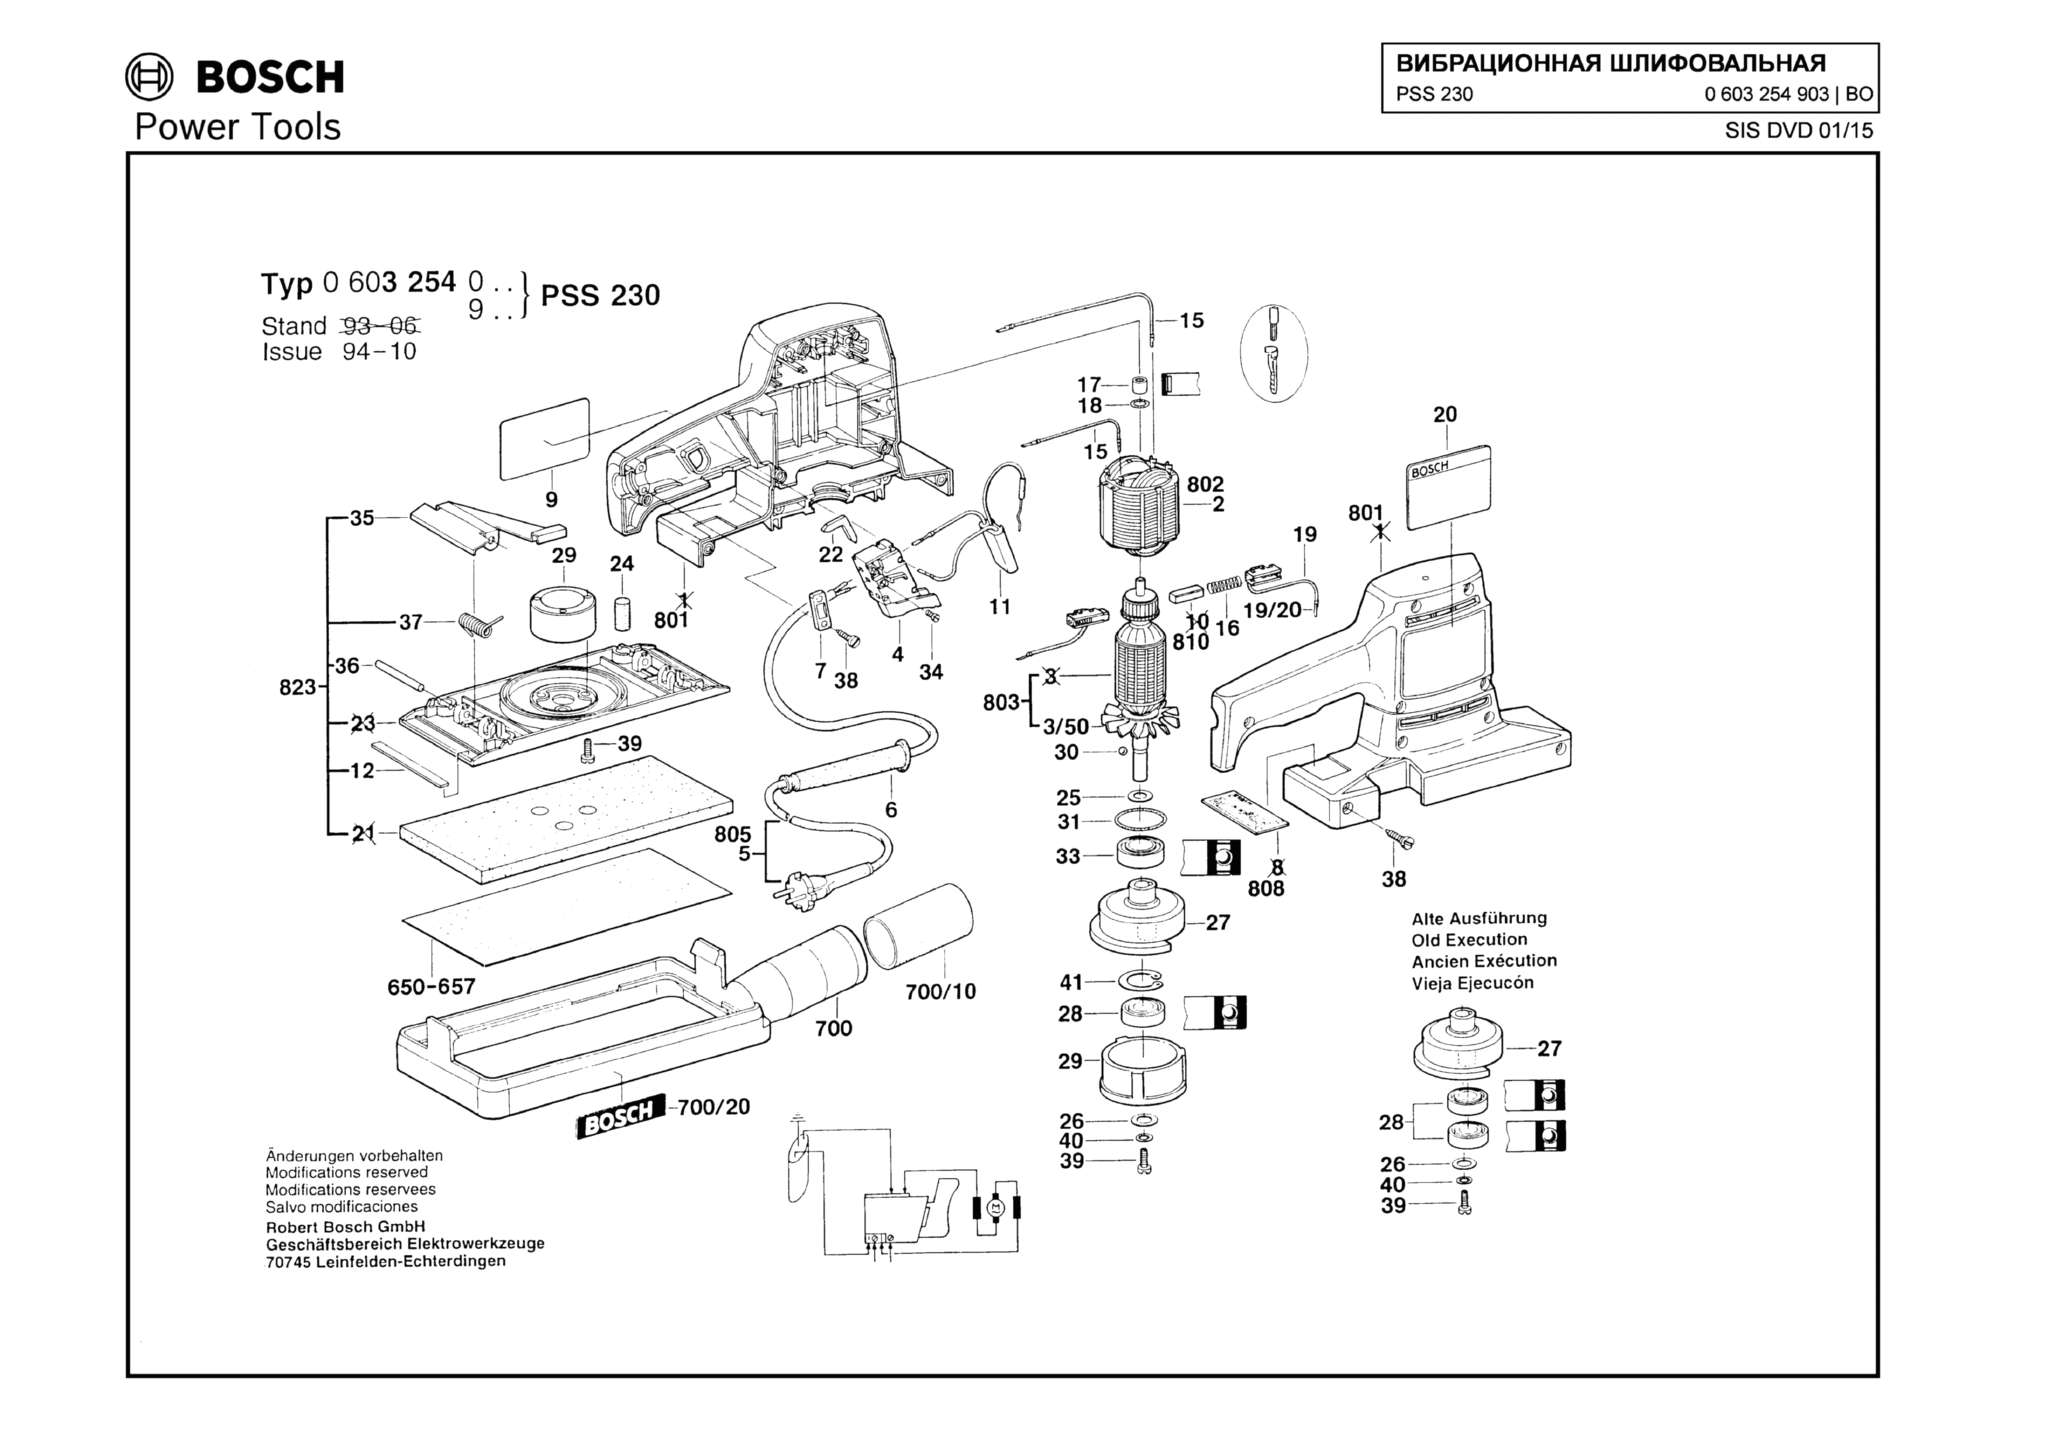 Запчасти, схема и деталировка Bosch PSS 230 (ТИП 0603254903)